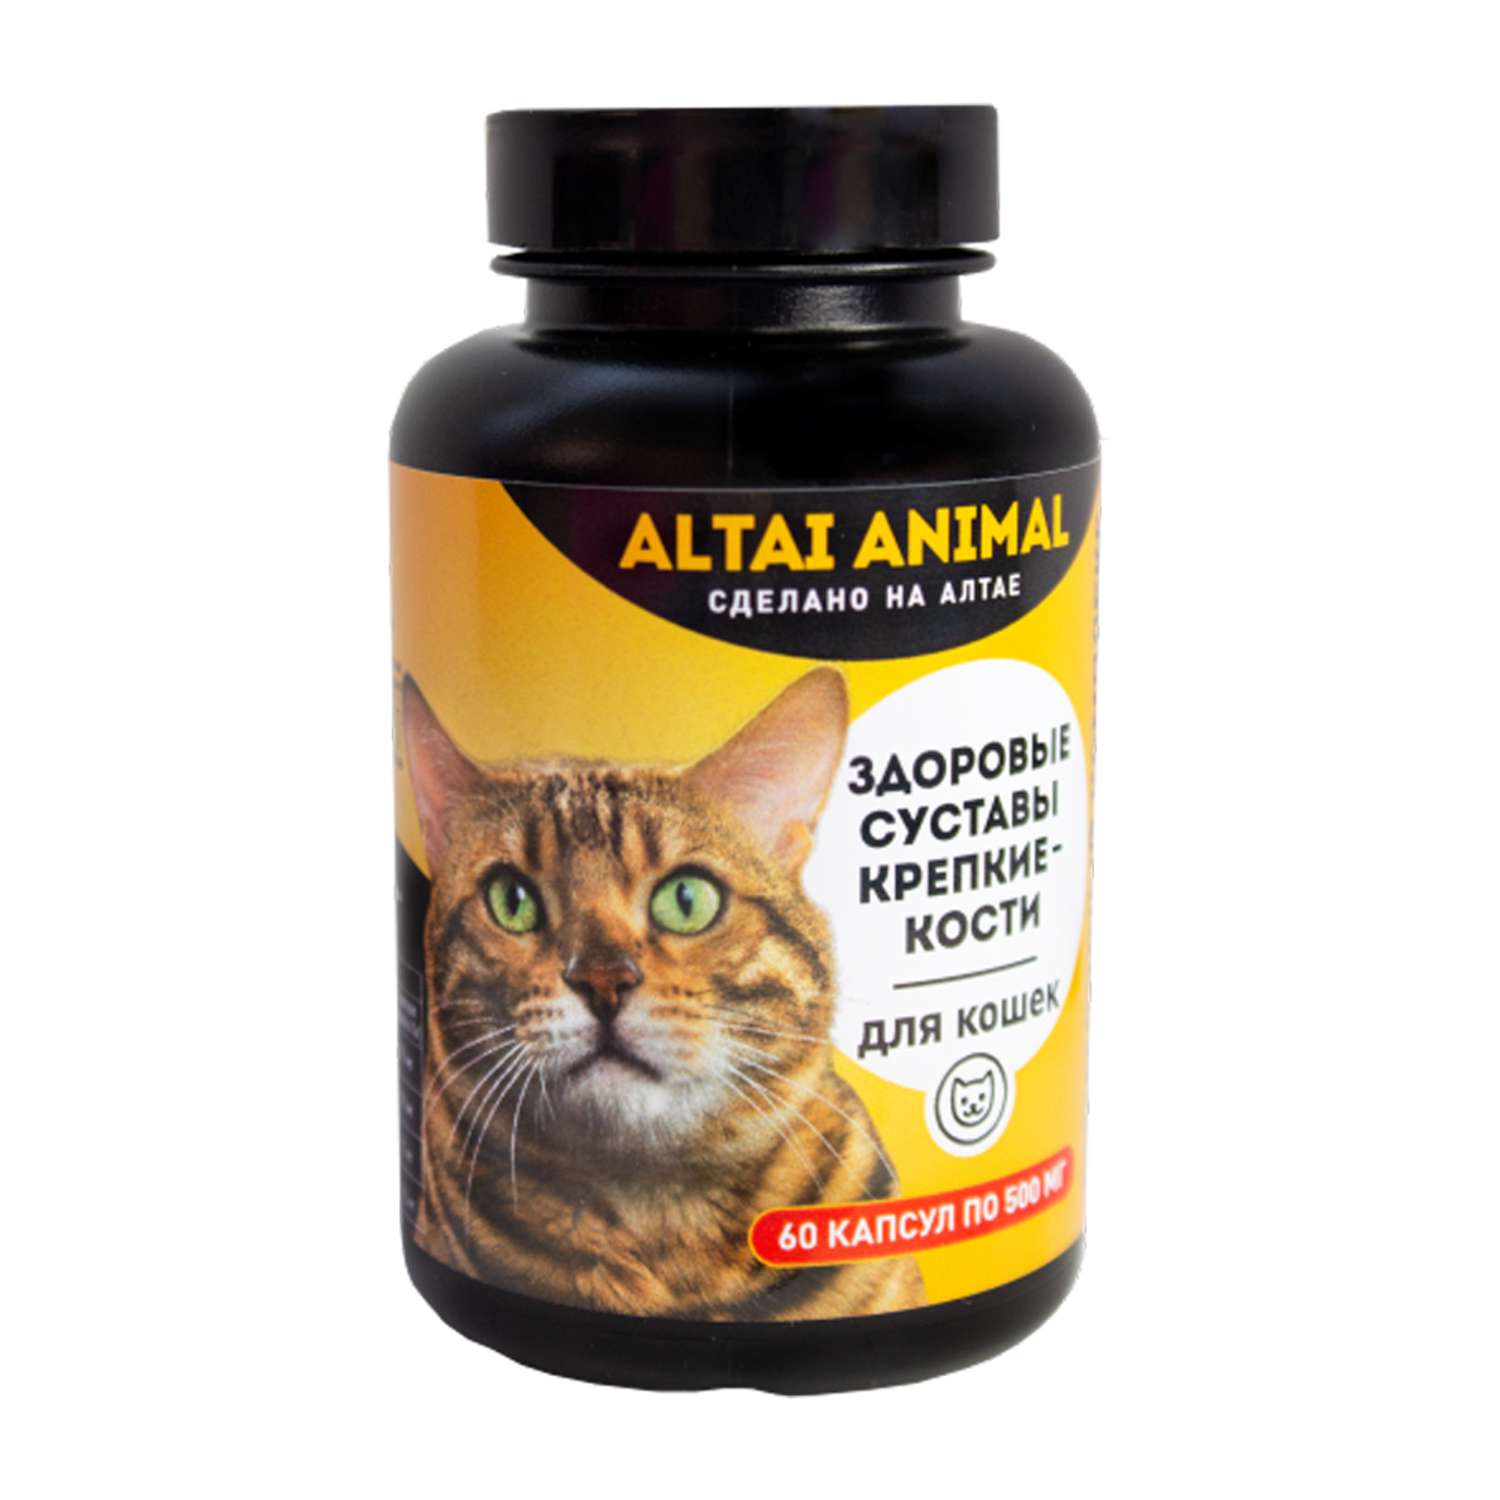 Витаминный комплекс ALTAI ANIMAL для кошек Здоровые суставы крепкие кости - фото 1